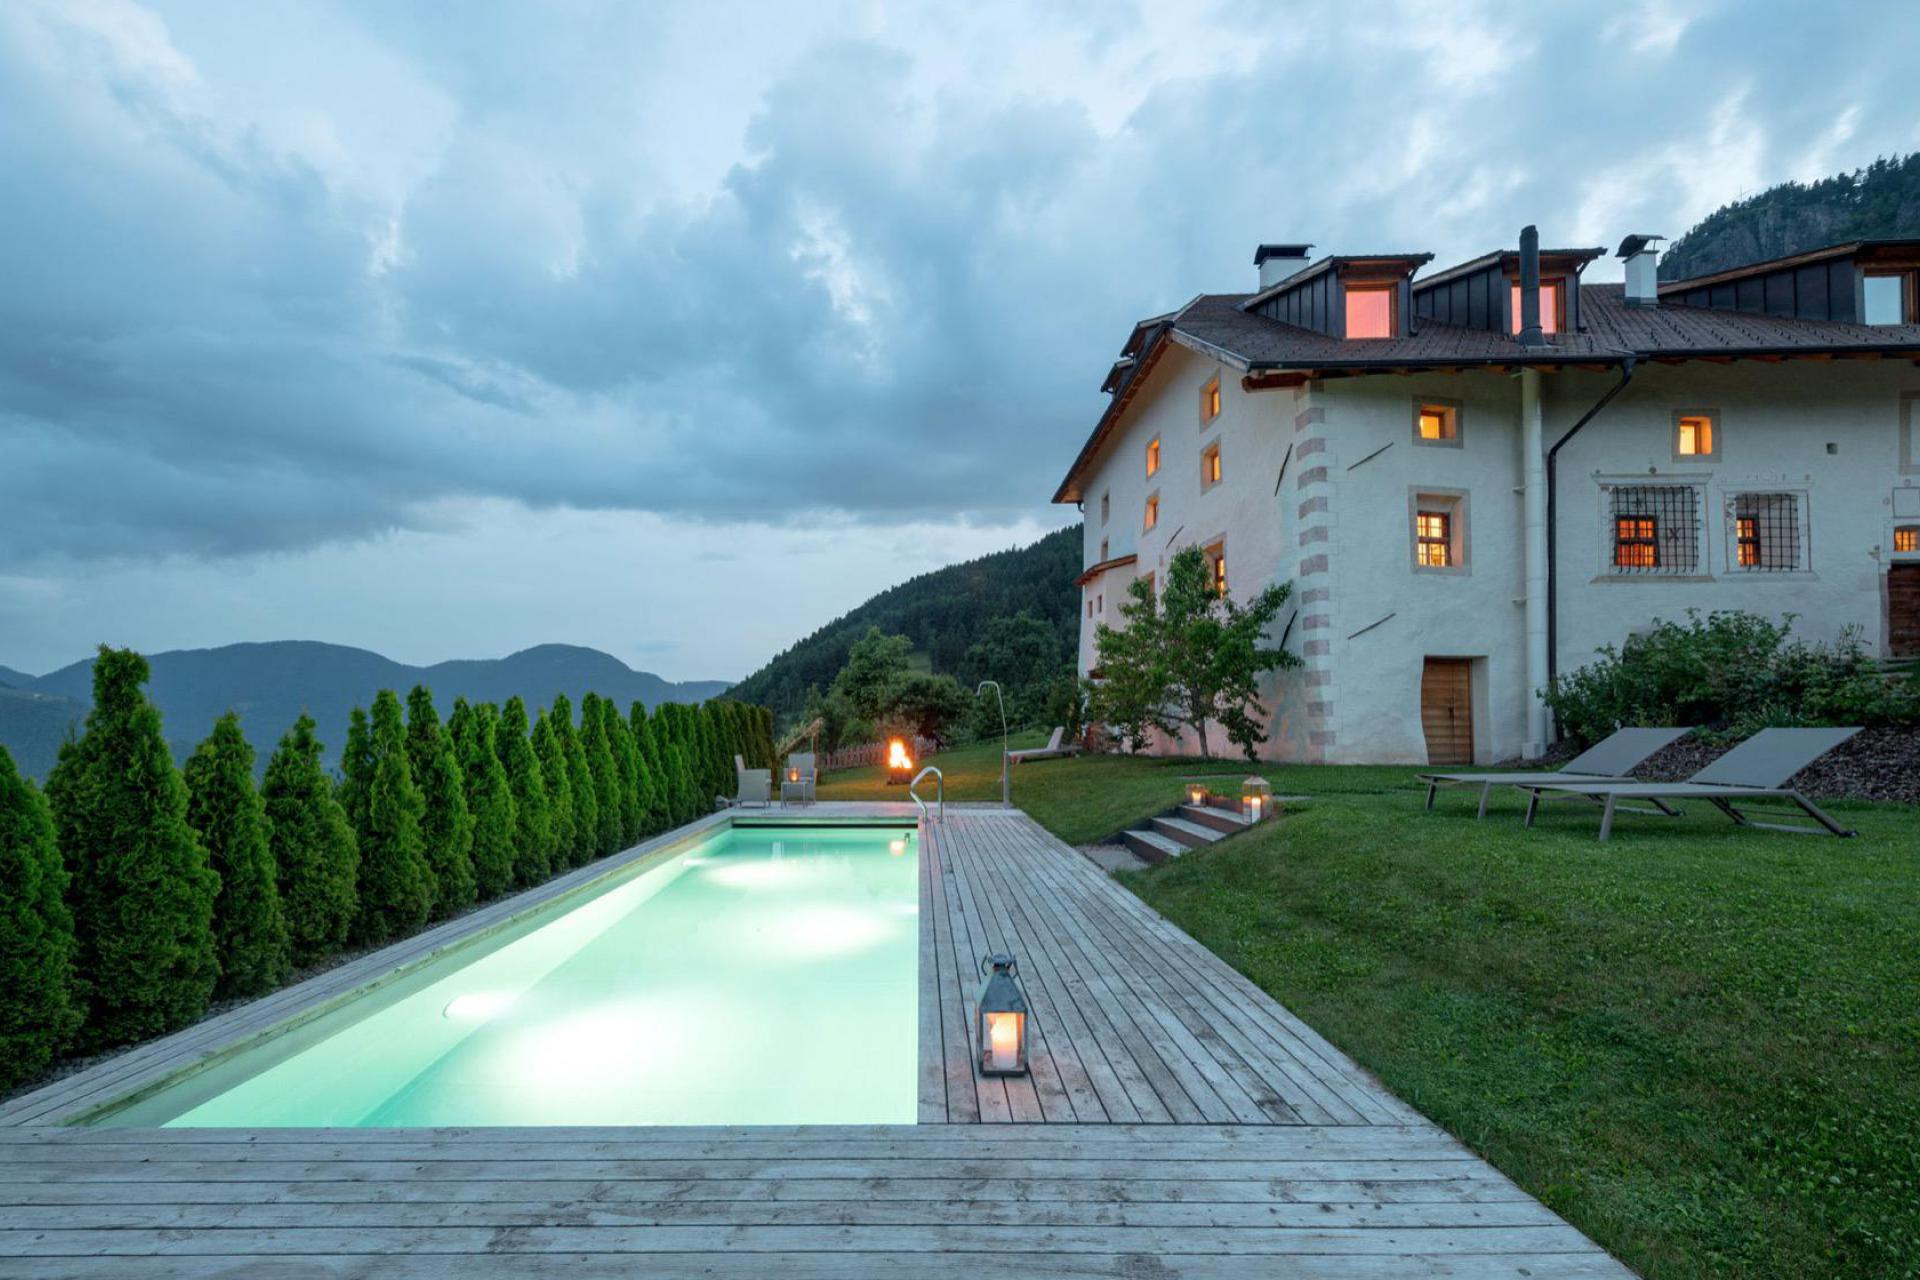 Luxus-Agriturismo mit B&B-Zimmern und Südtiroler Gastlichkeit